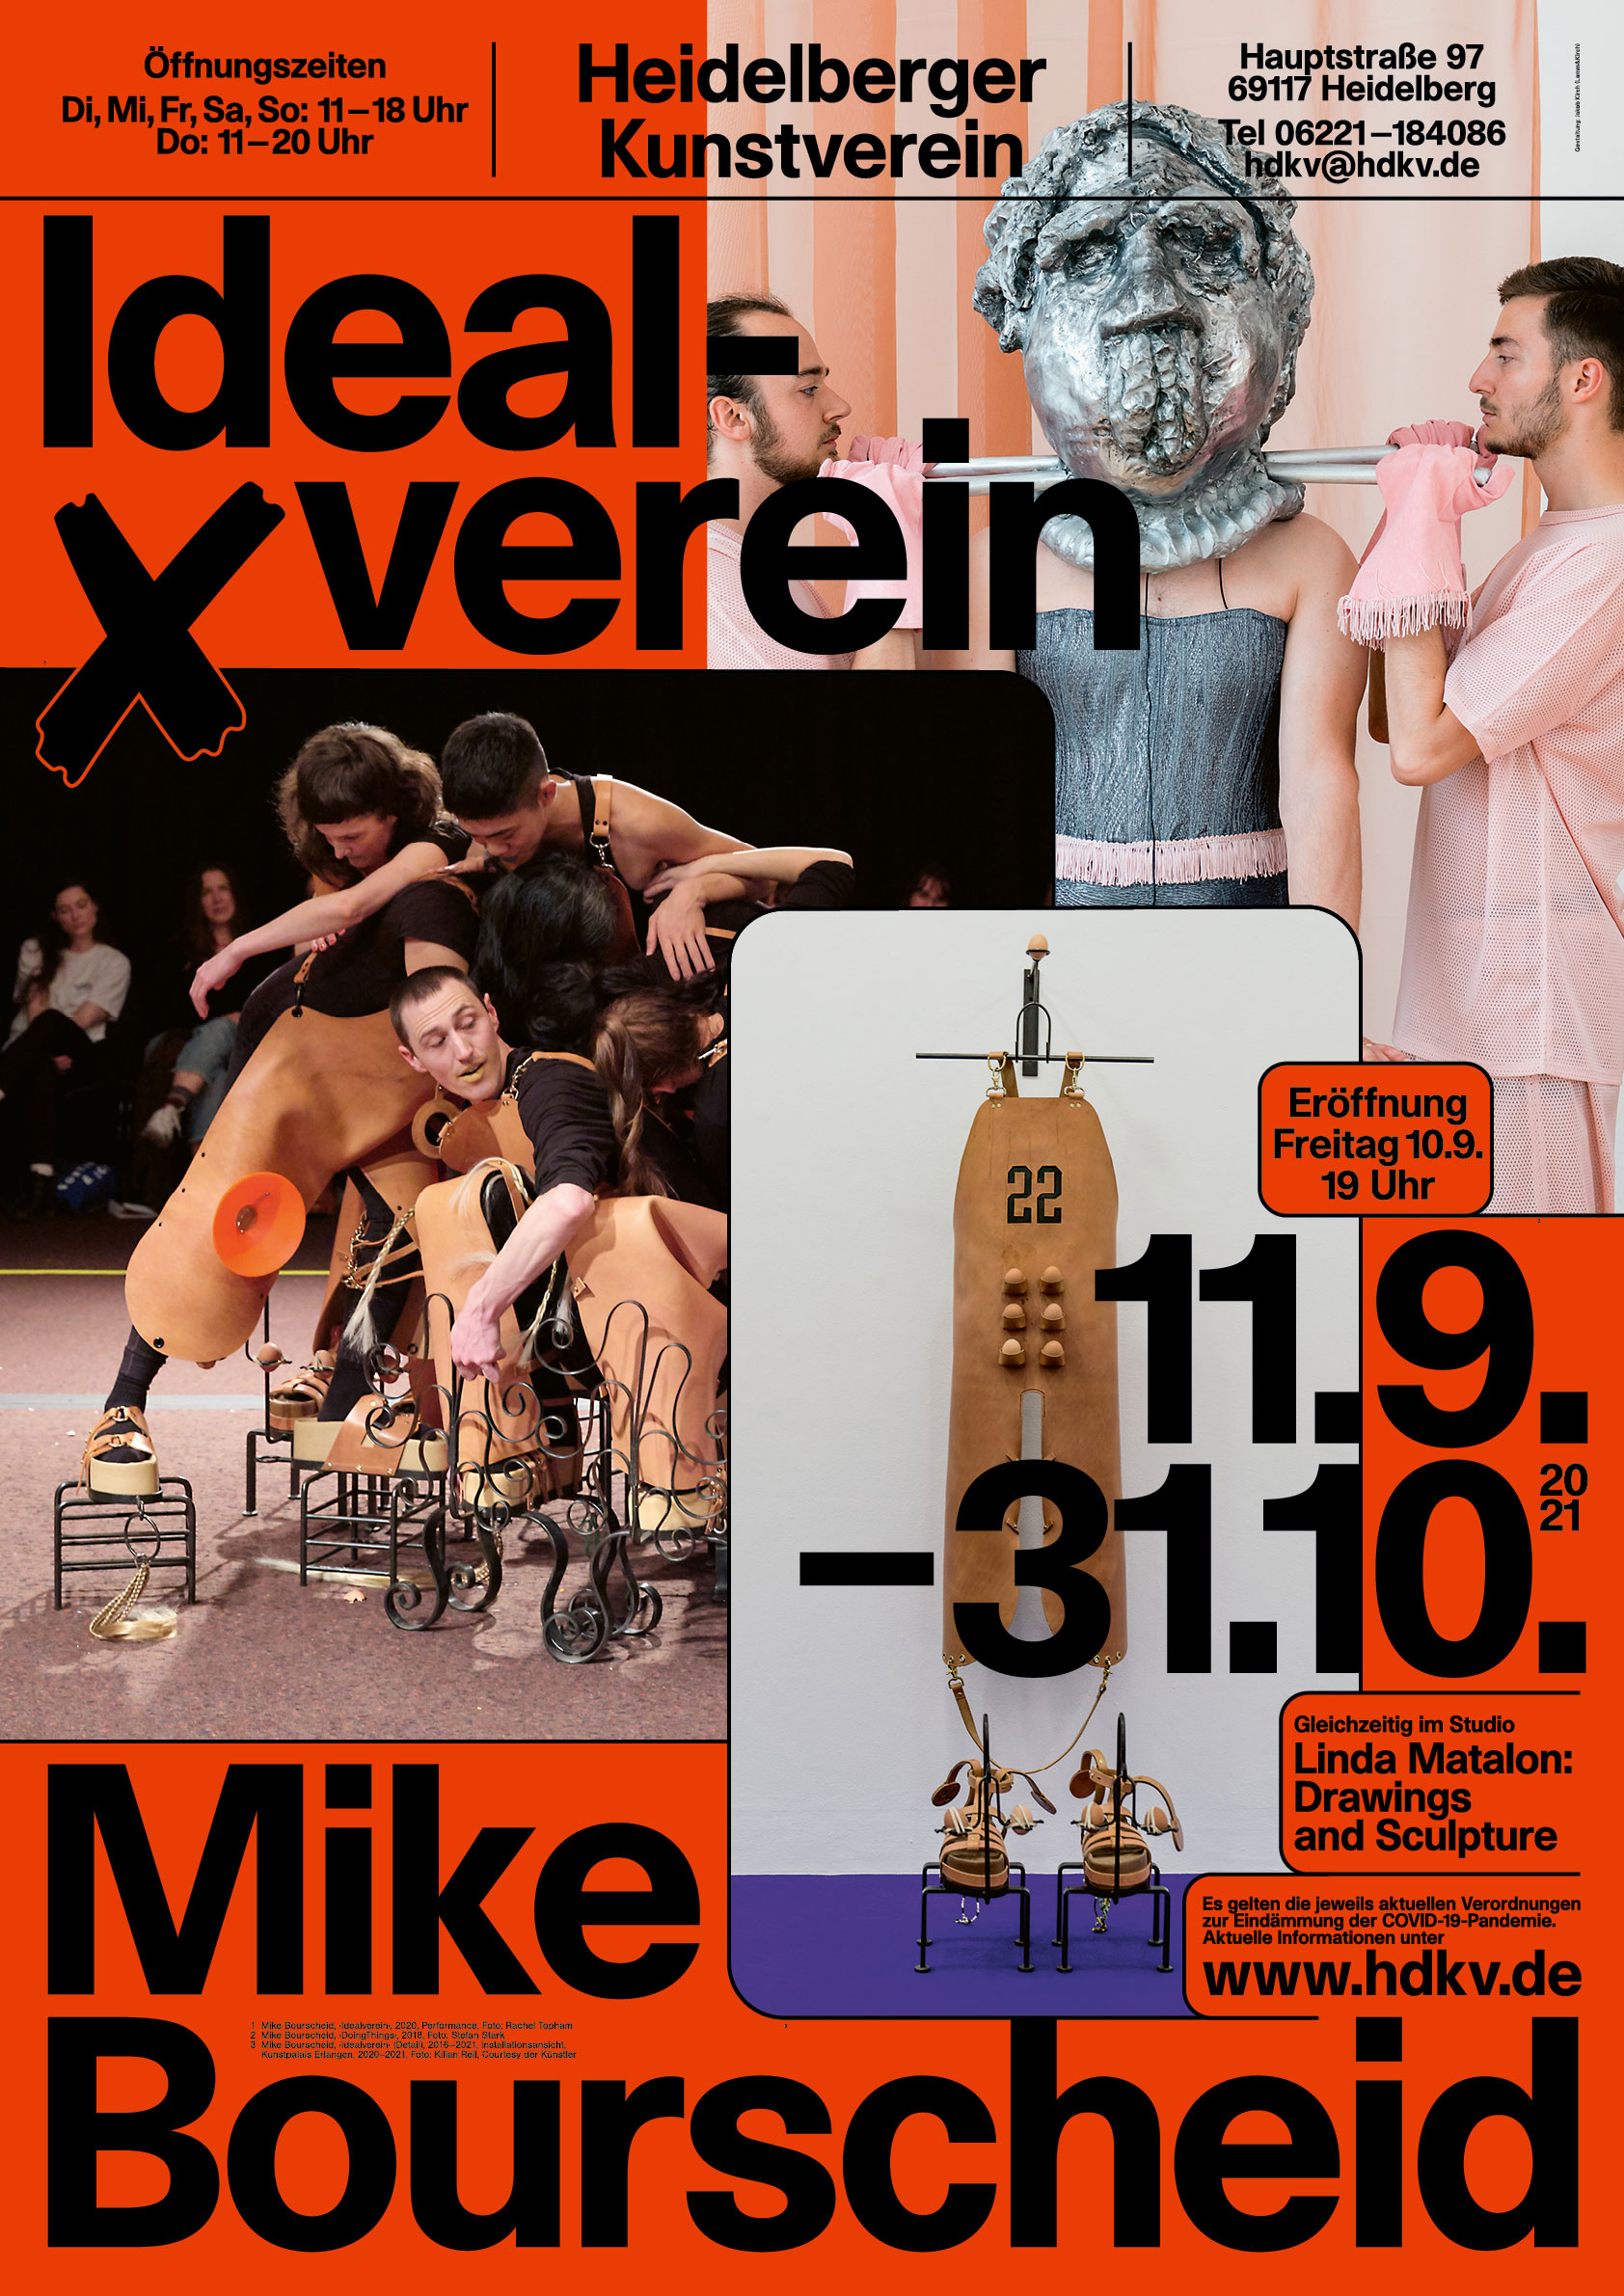 Mike Bourscheid: Idealverein | Exhibition at Heidelberger Kunstverein (DE)